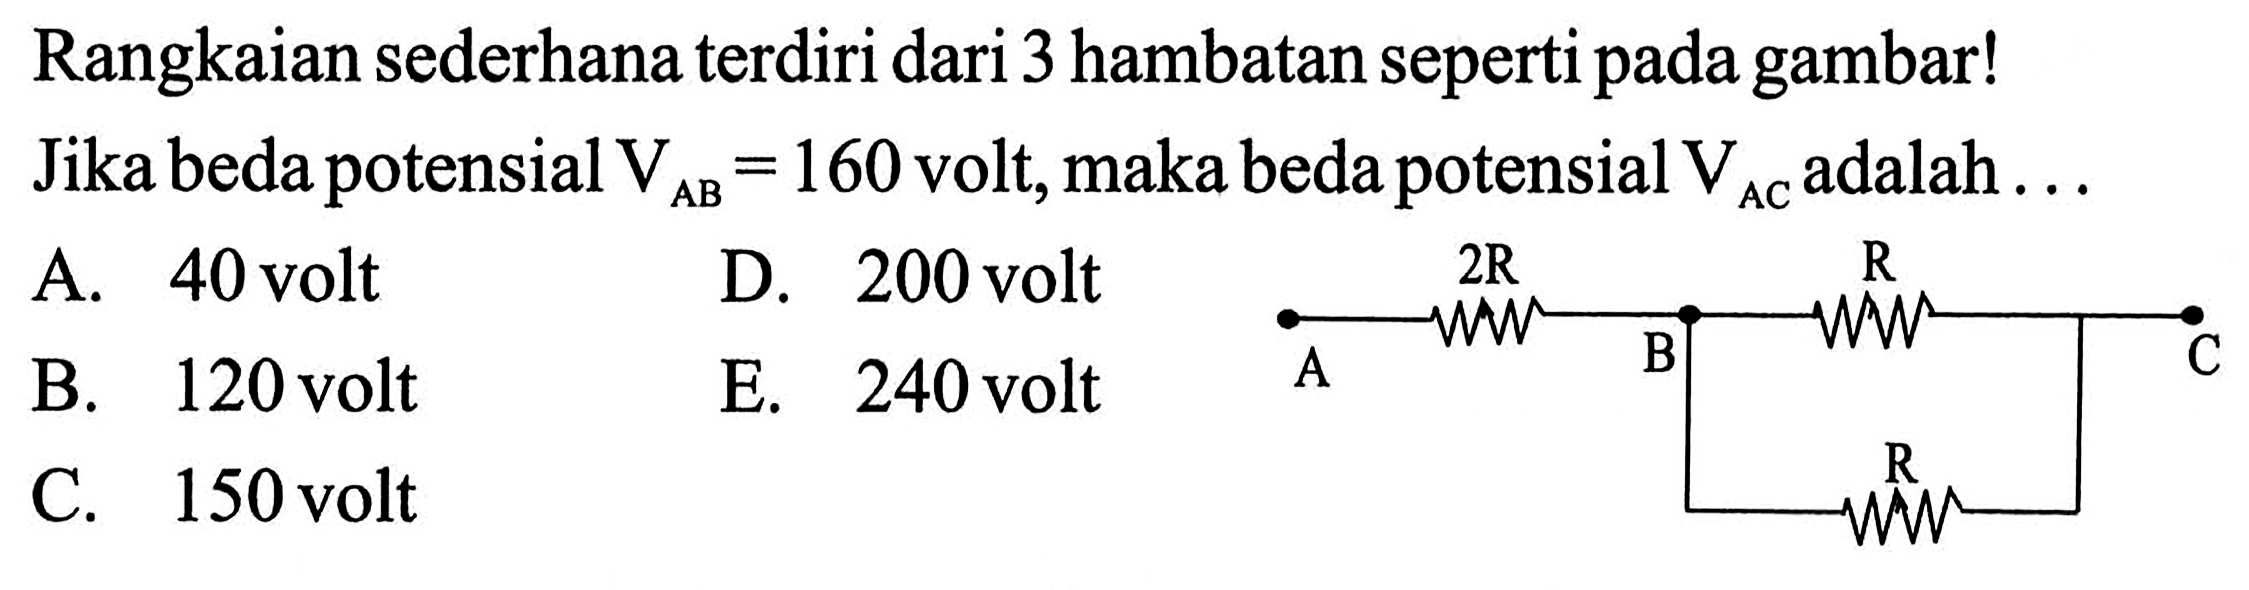 Rangkaian sederhana terdiri dari 3 hambatan seperti pada gambar! Jika beda potensial VAB=160 volt, maka beda potensial VAC adalah ...A 2R B R CR